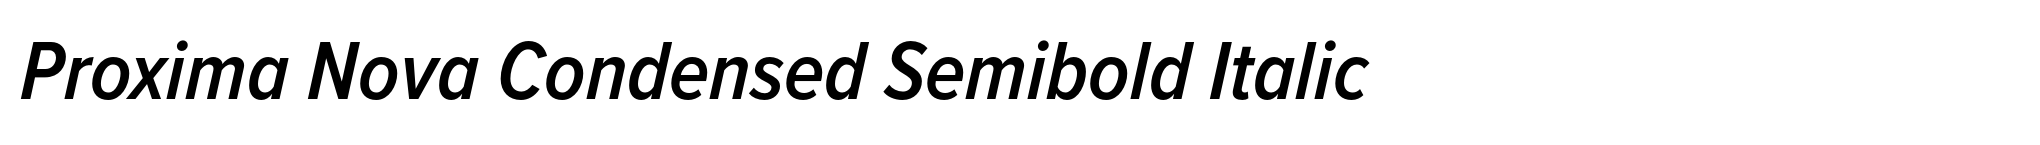 Proxima Nova Condensed Semibold Italic image